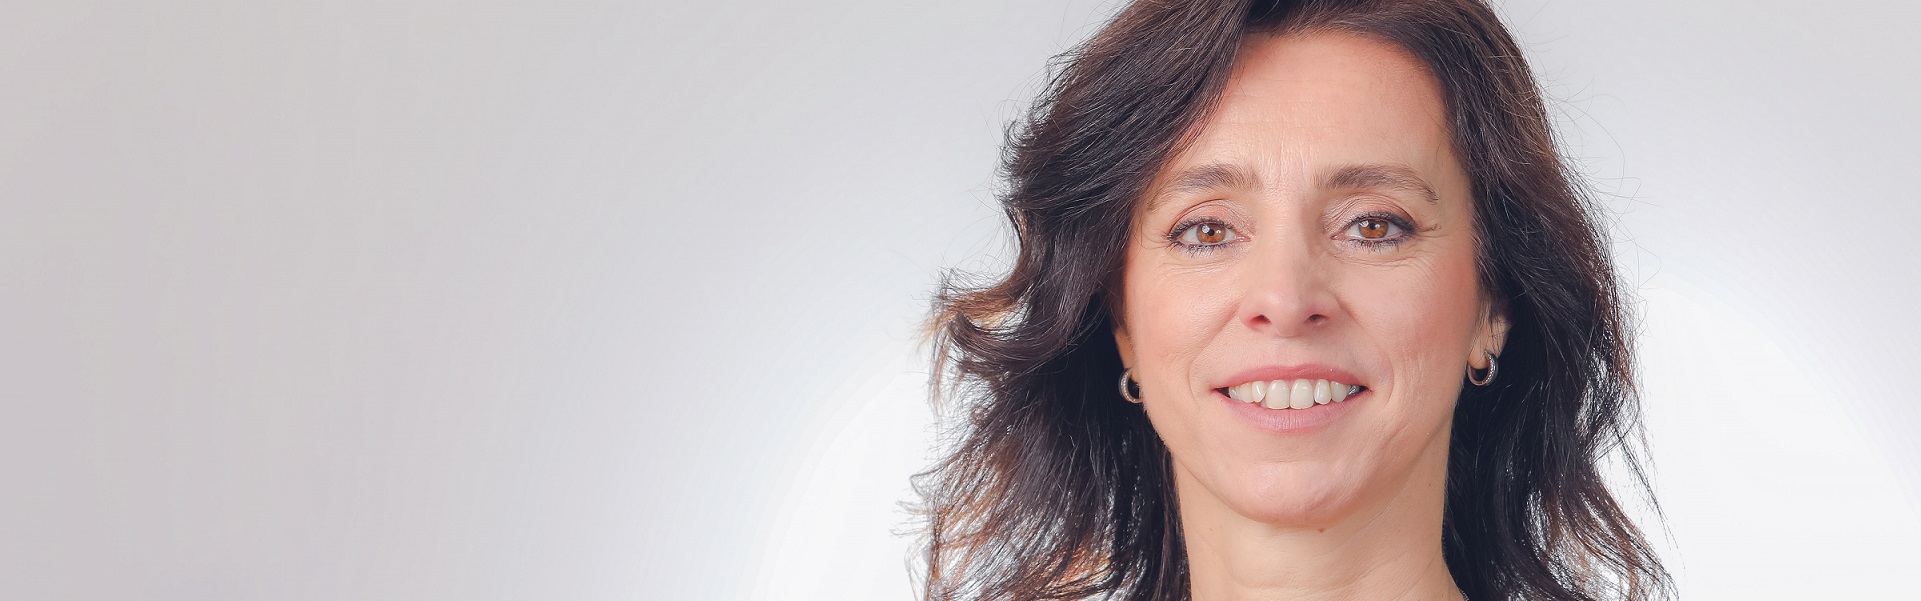 Claudia Boeri, presidente de SAP para Región Sur, lidera ranking de mujeres líderes